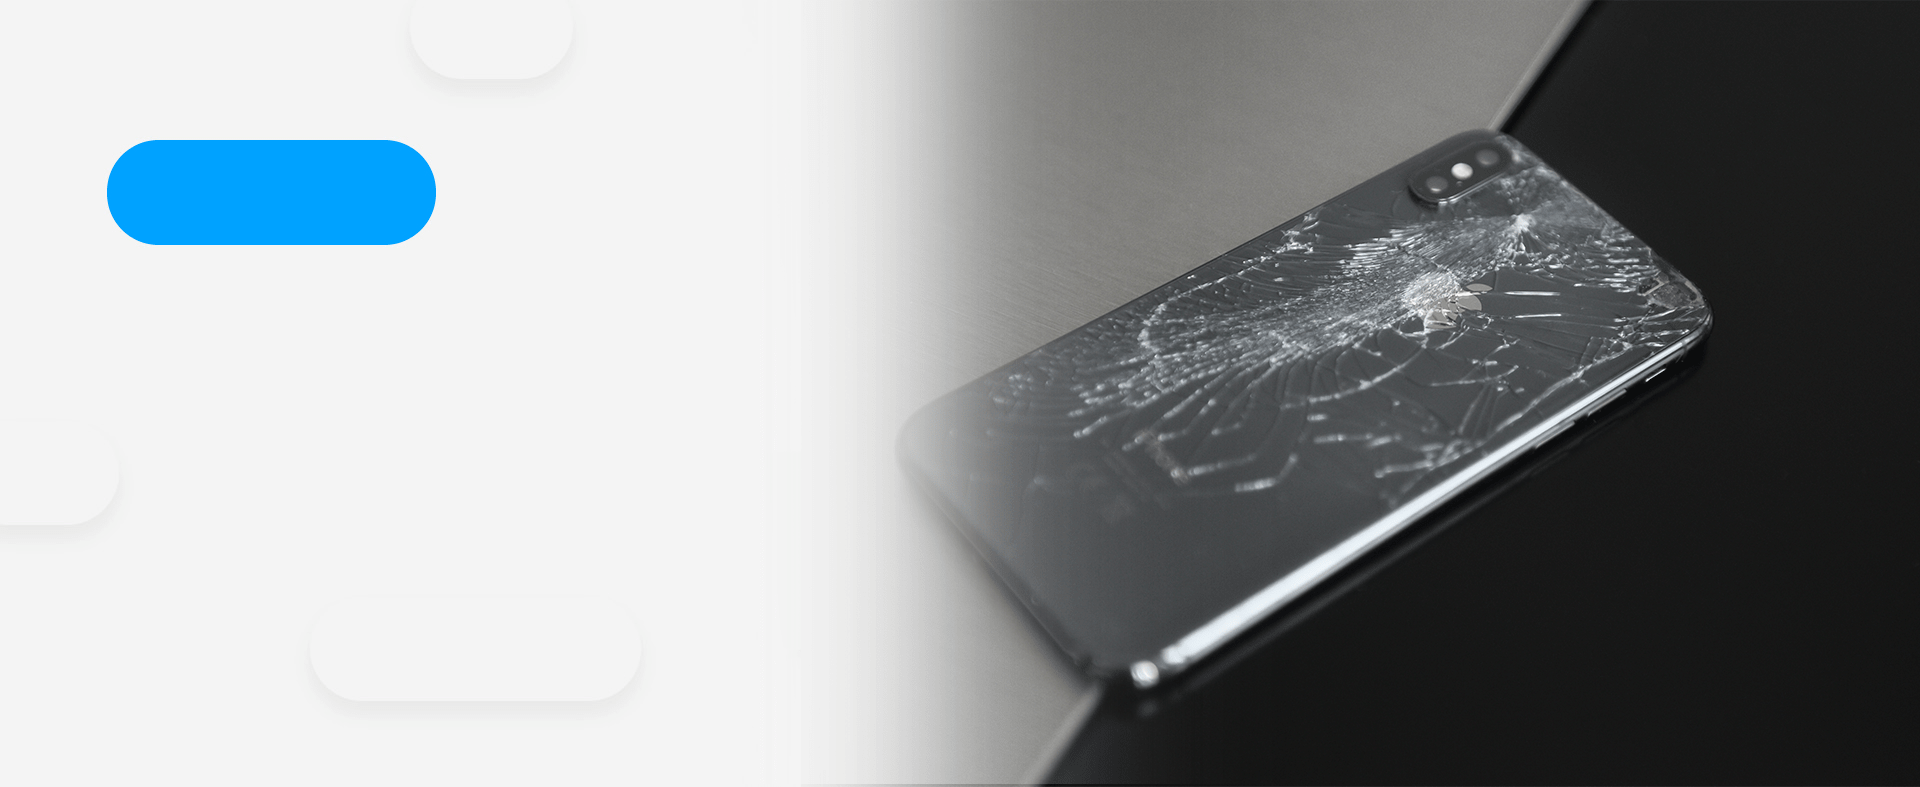 Shattered Iphone awaiting repairs.